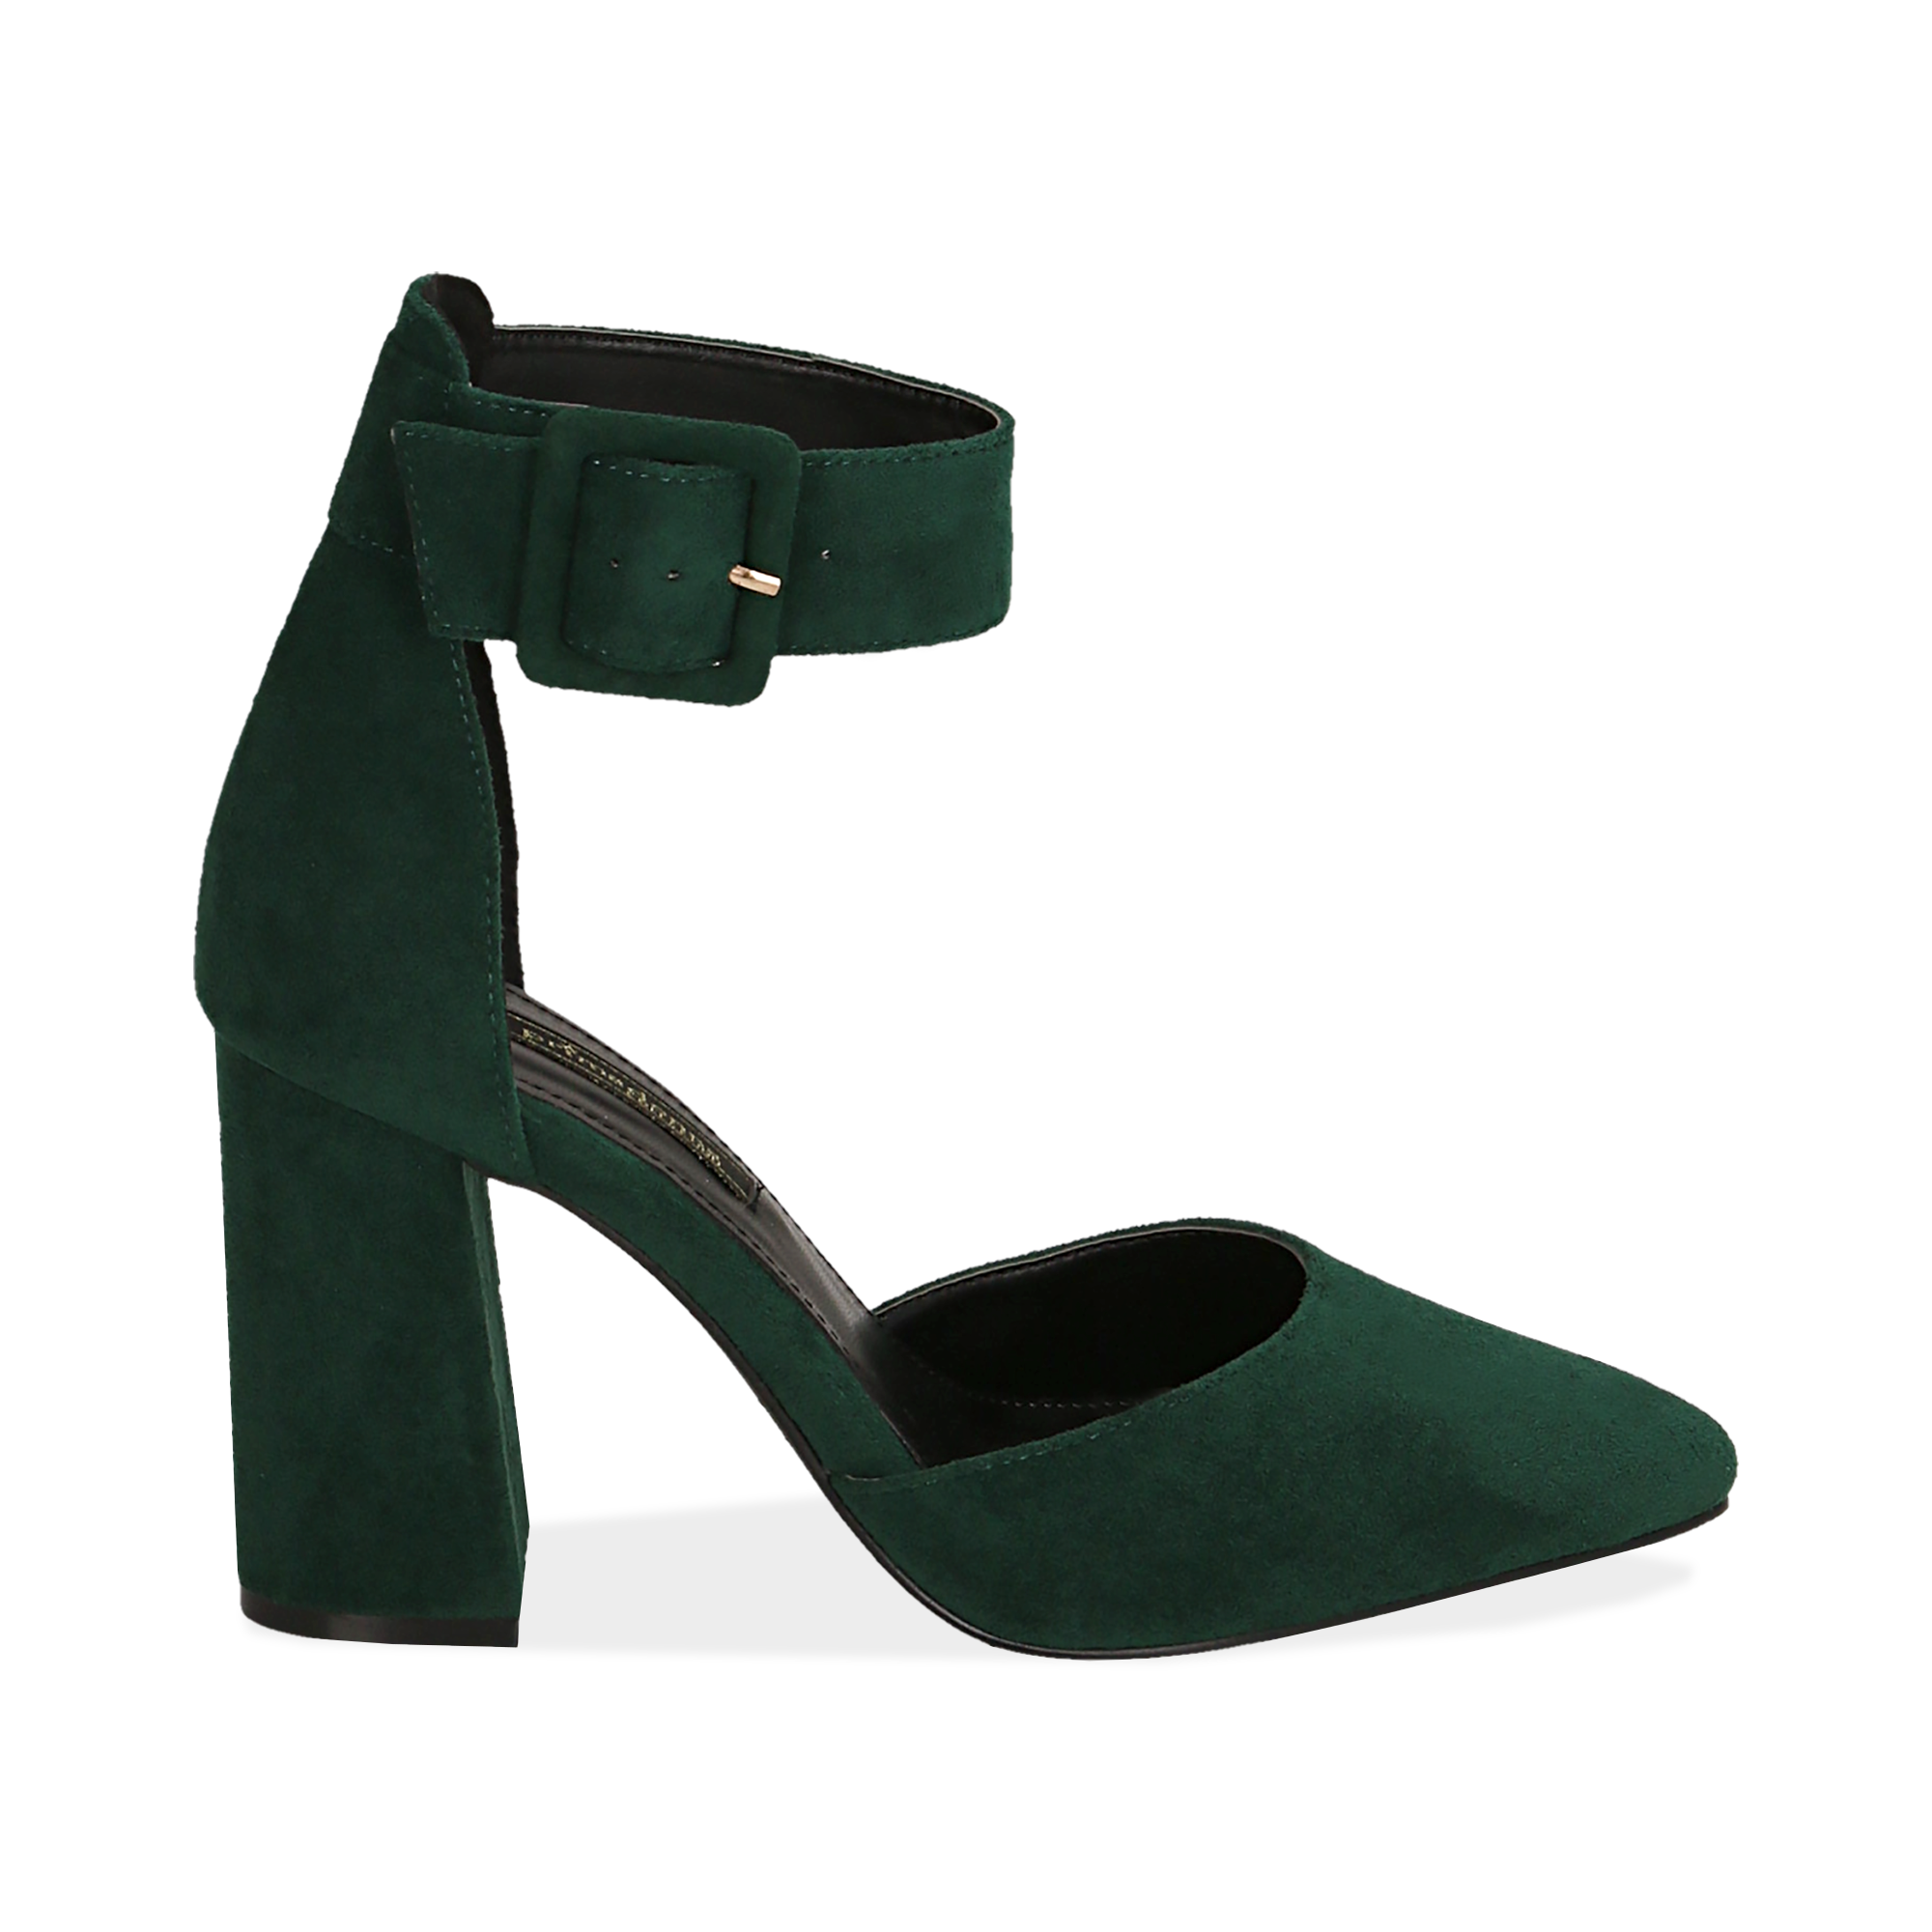 scarpe con tacco verdi